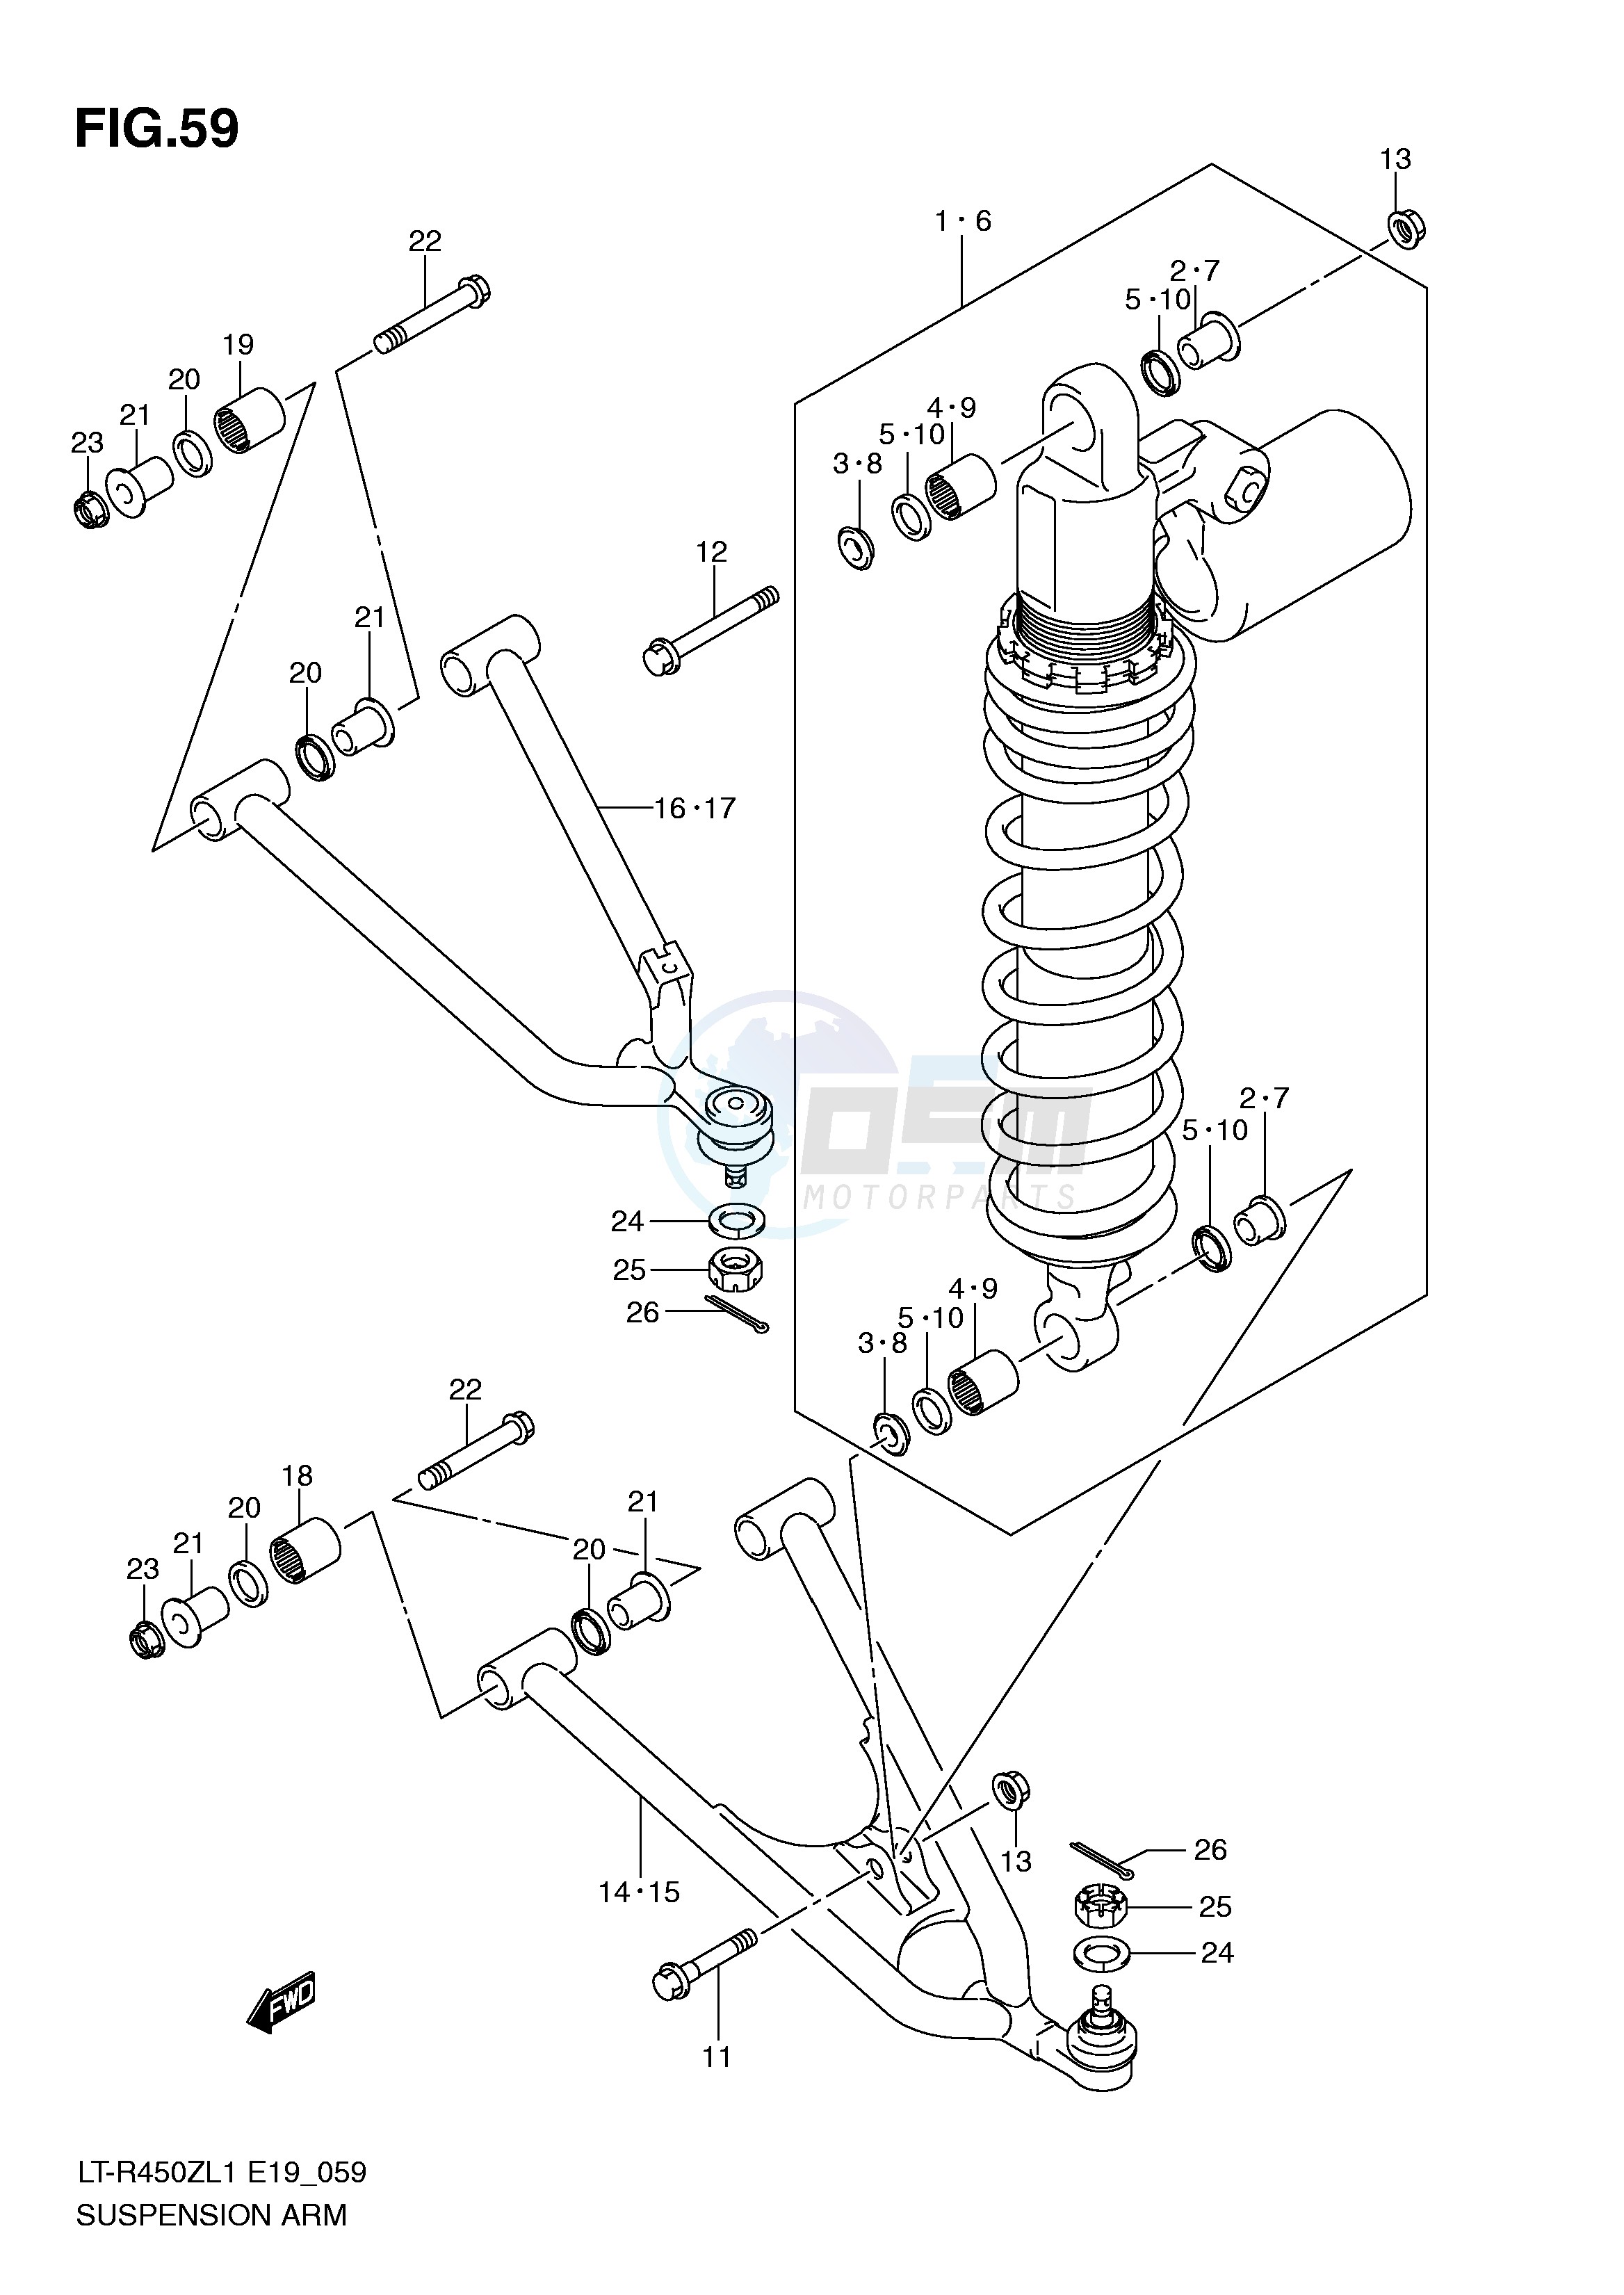 SUSPENSION ARM (LT-R450ZL1 E19) blueprint